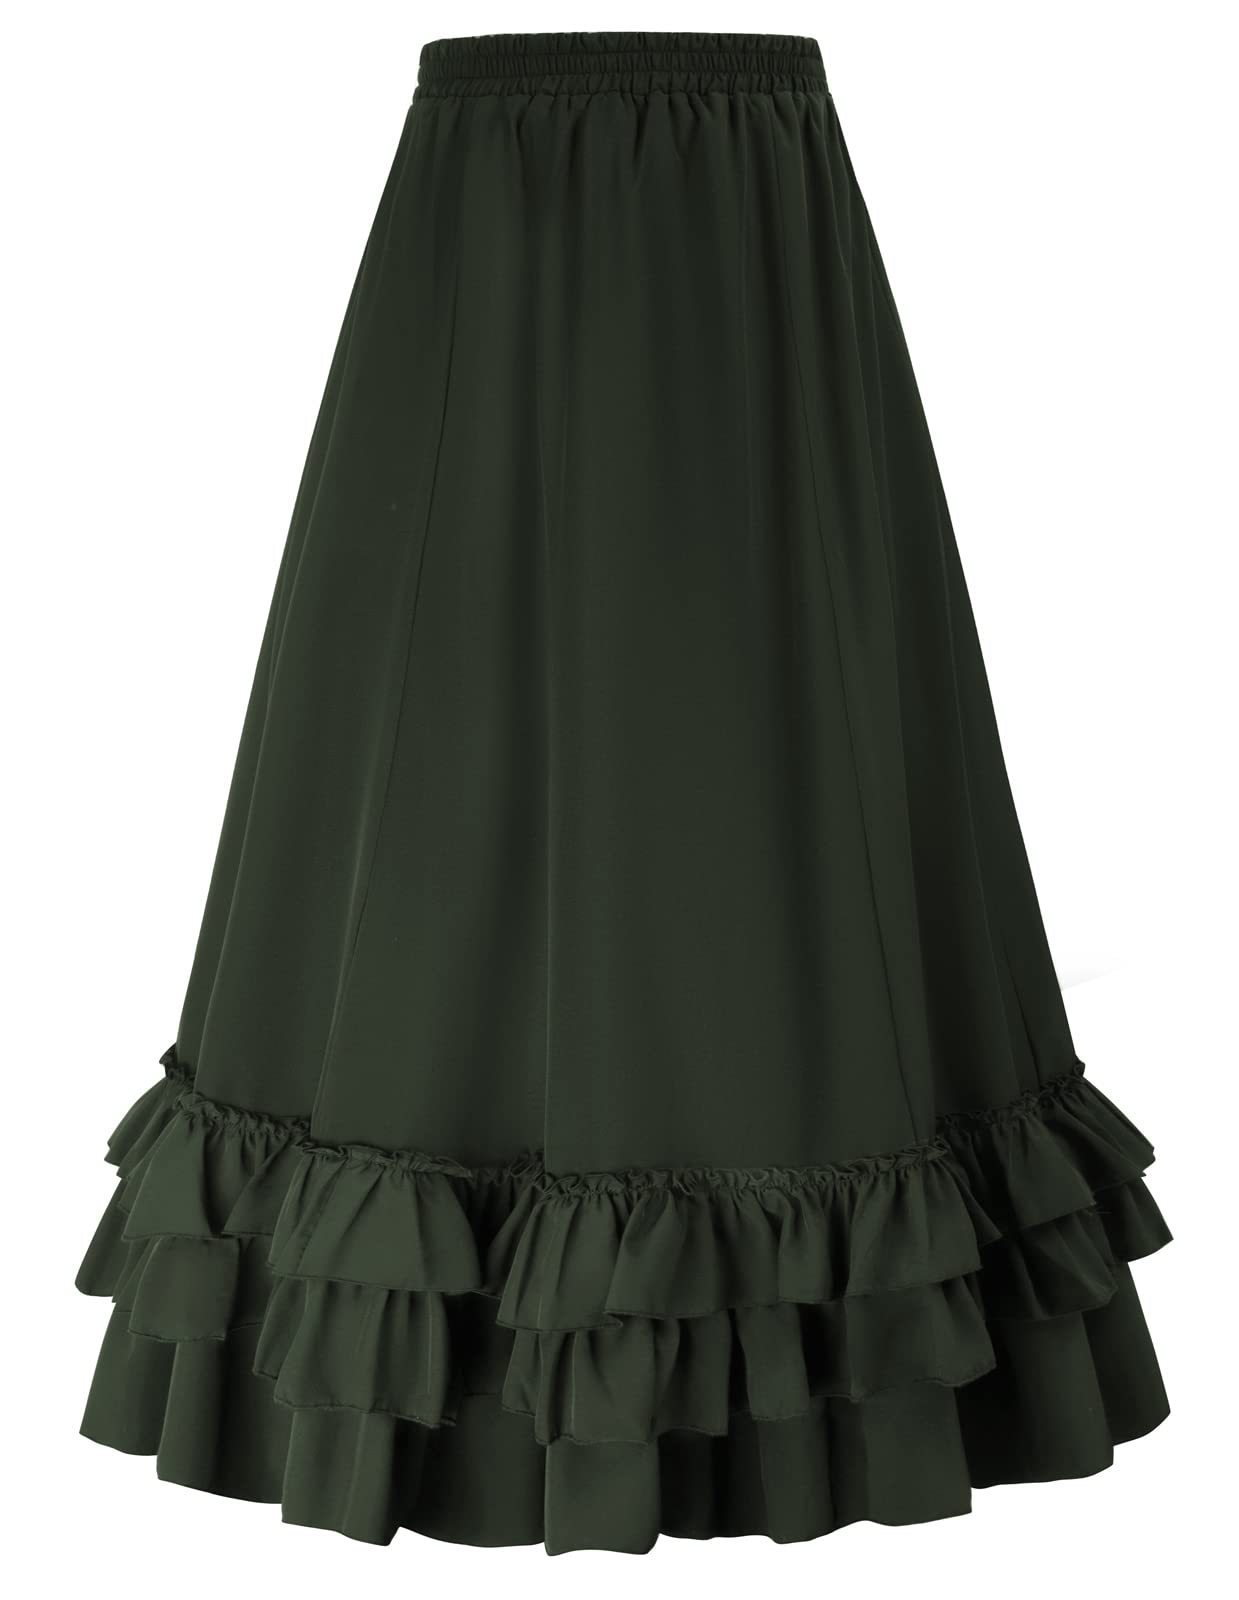 Women's Vintage Gothic Victorian Skirt